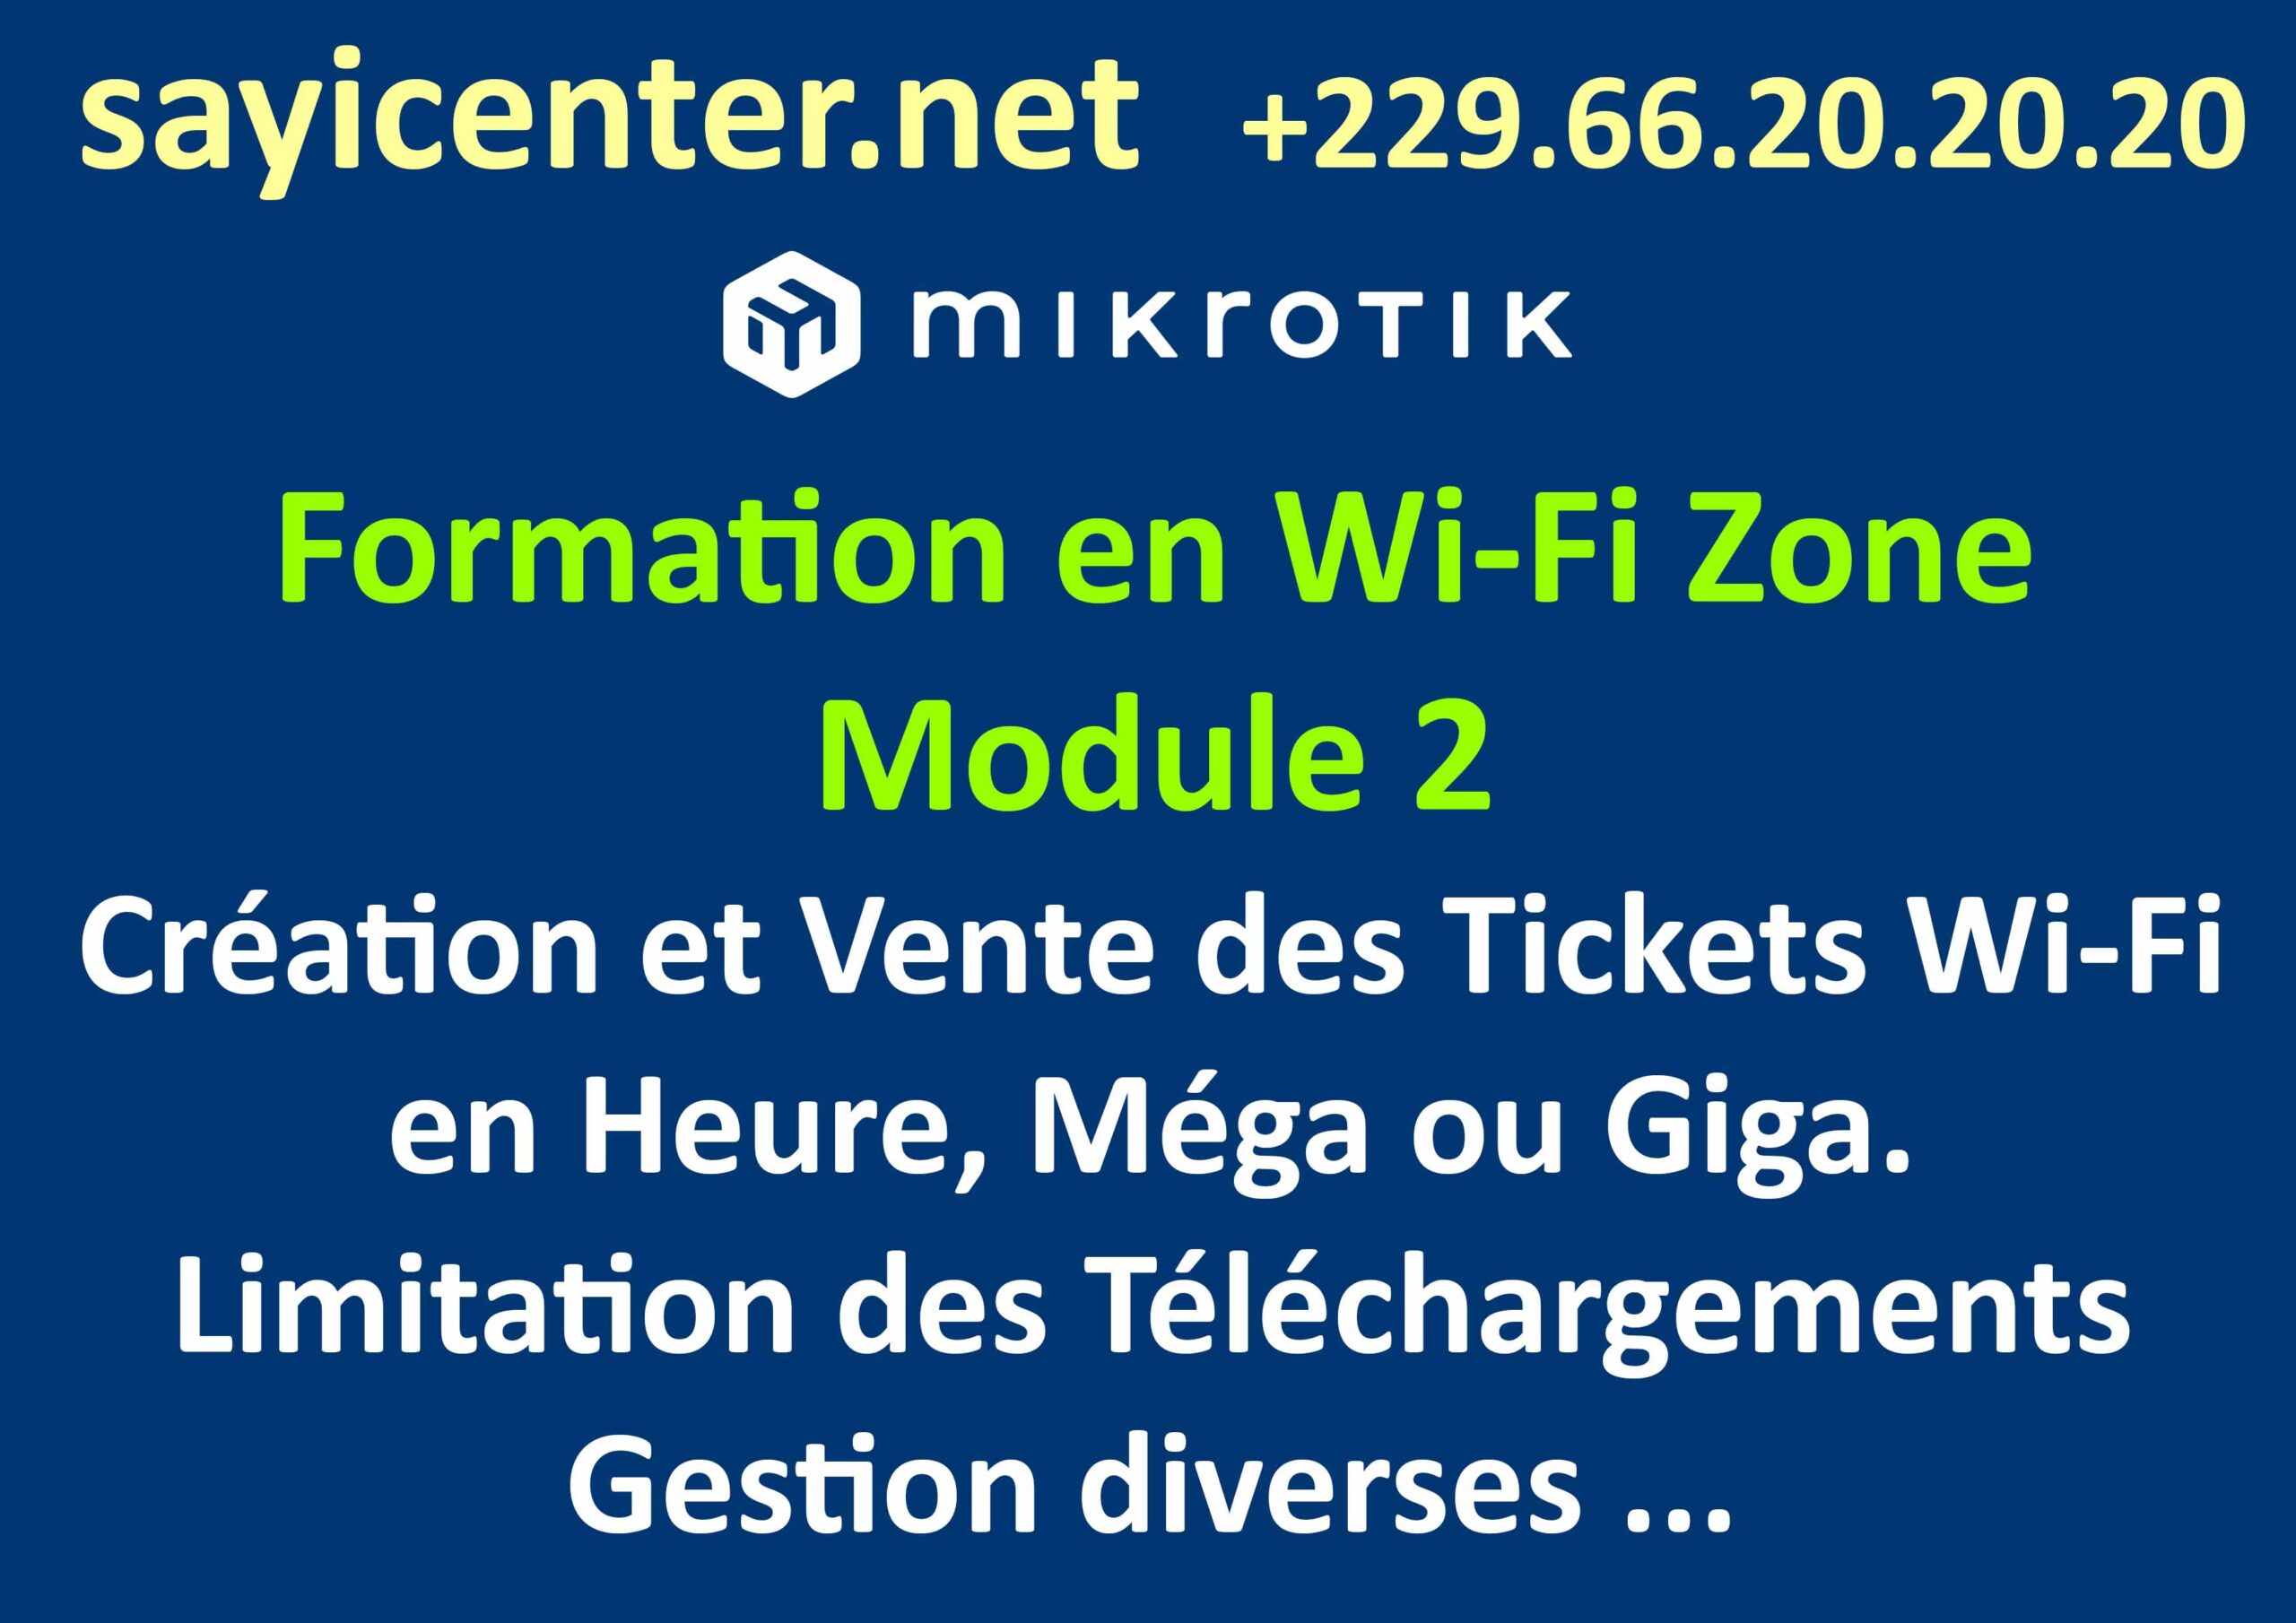 Formation en Wi-Fi Zone 2- Création et Vente des Tickets Wi-Fi en Heure, Méga ou Giga. Limitation des Téléchargements, Gestion diverses ...